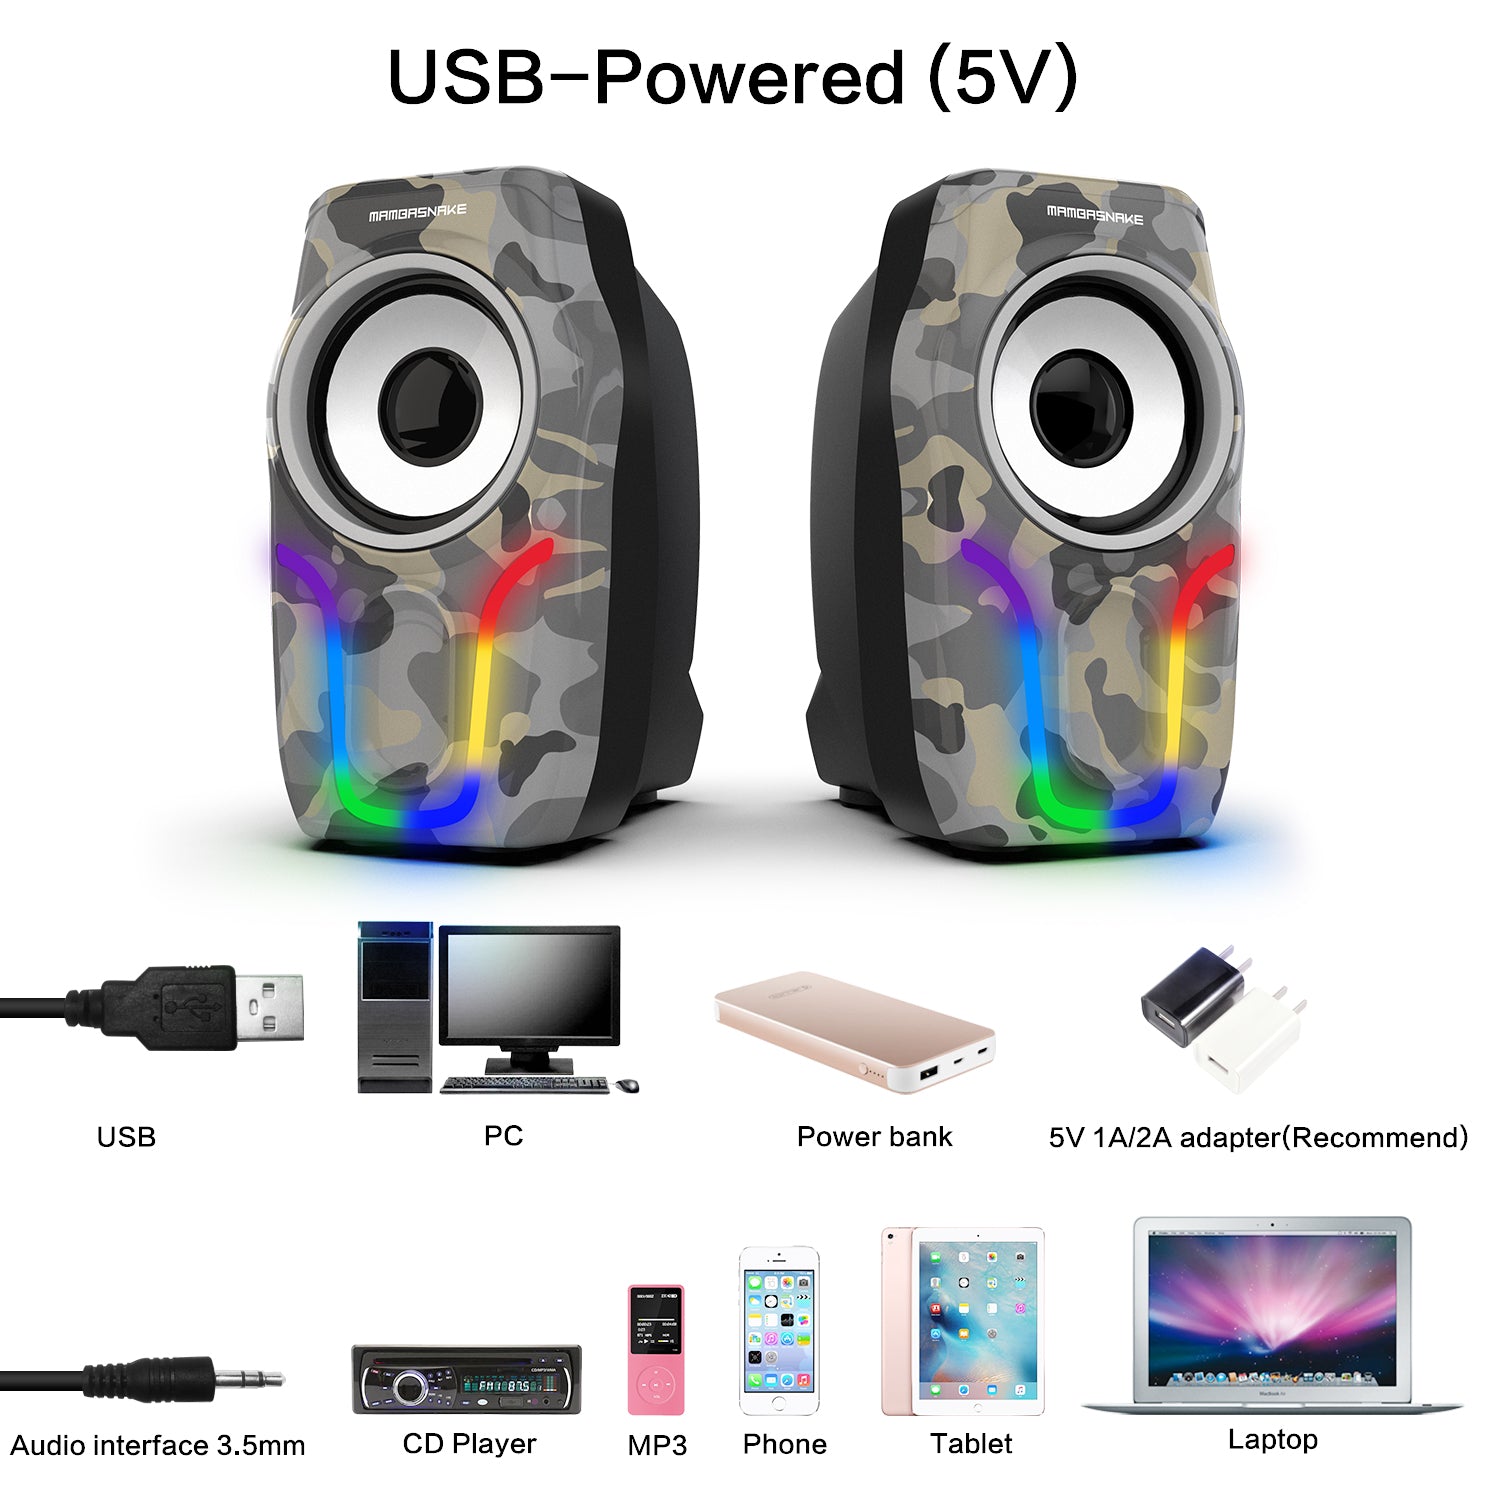 Computerlautsprecher, 2.0-Stereo-Lautstärkeregler, Gaming-Lautsprecher mit Surround-Sound, 6 RGB-LED-Hintergrundbeleuchtungseffekt, USB-betriebene, kabelgebundene Laptop-Lautsprecher mit 3,5 mm für Desktop-Computer/PC/Laptops (Weiß)